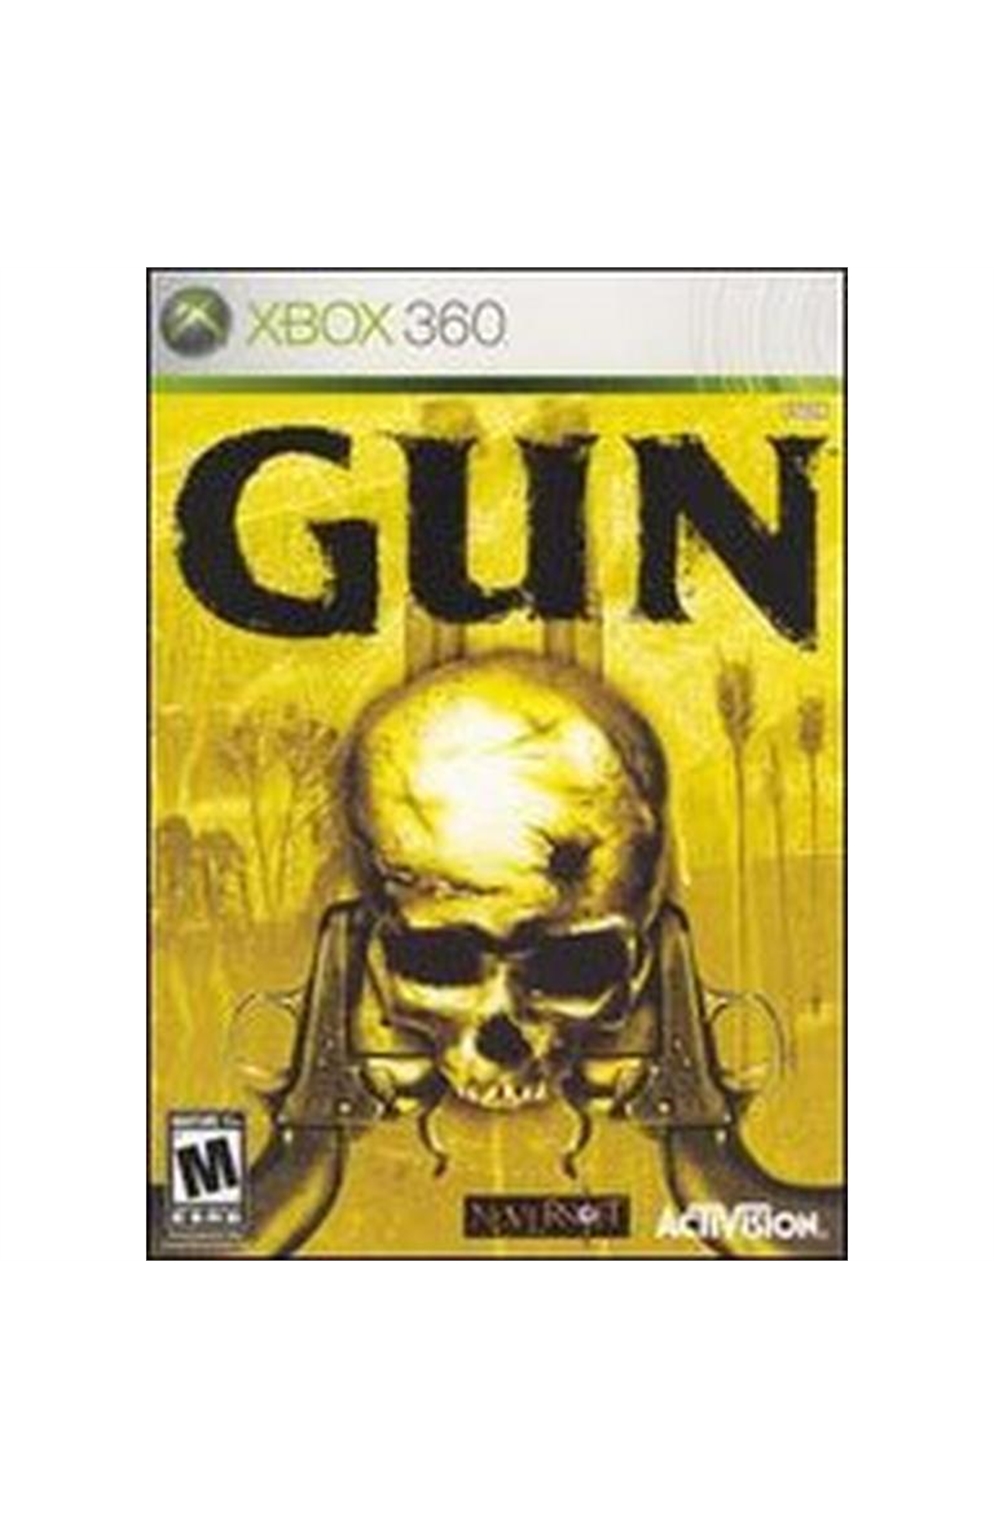 Xbox Xb Gun